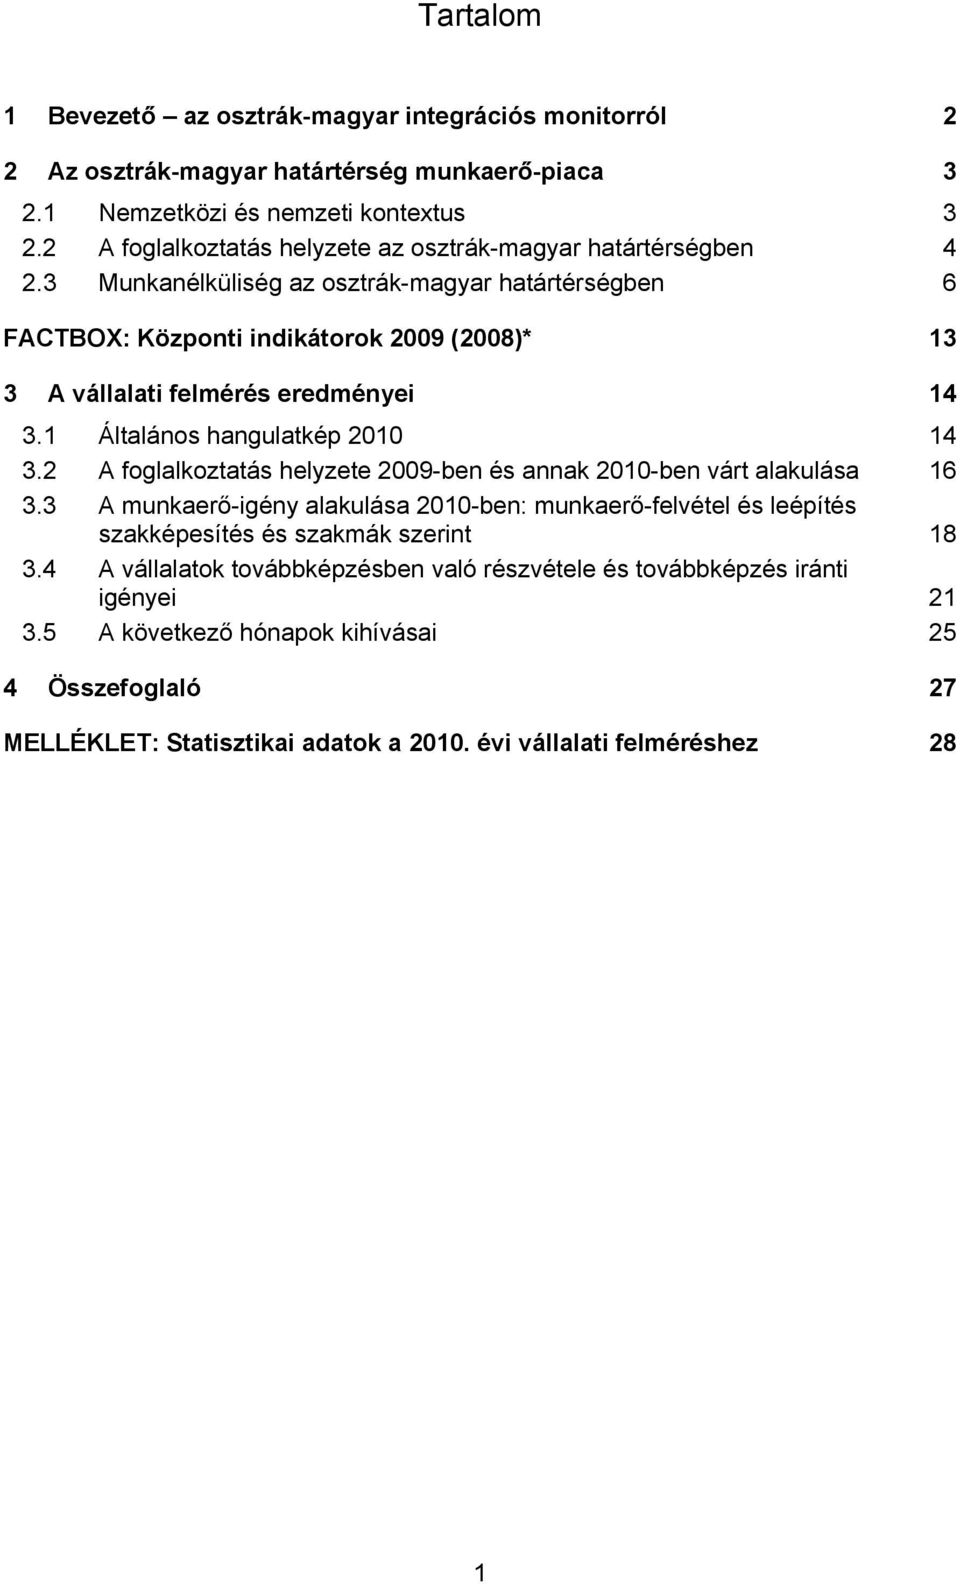 3 Munkanélküliség az osztrák-magyar határtérségben 6 FACTBOX: Központi indikátorok 2009 (2008)* 13 3 A vállalati felmérés eredményei 14 3.1 Általános hangulatkép 2010 14 3.